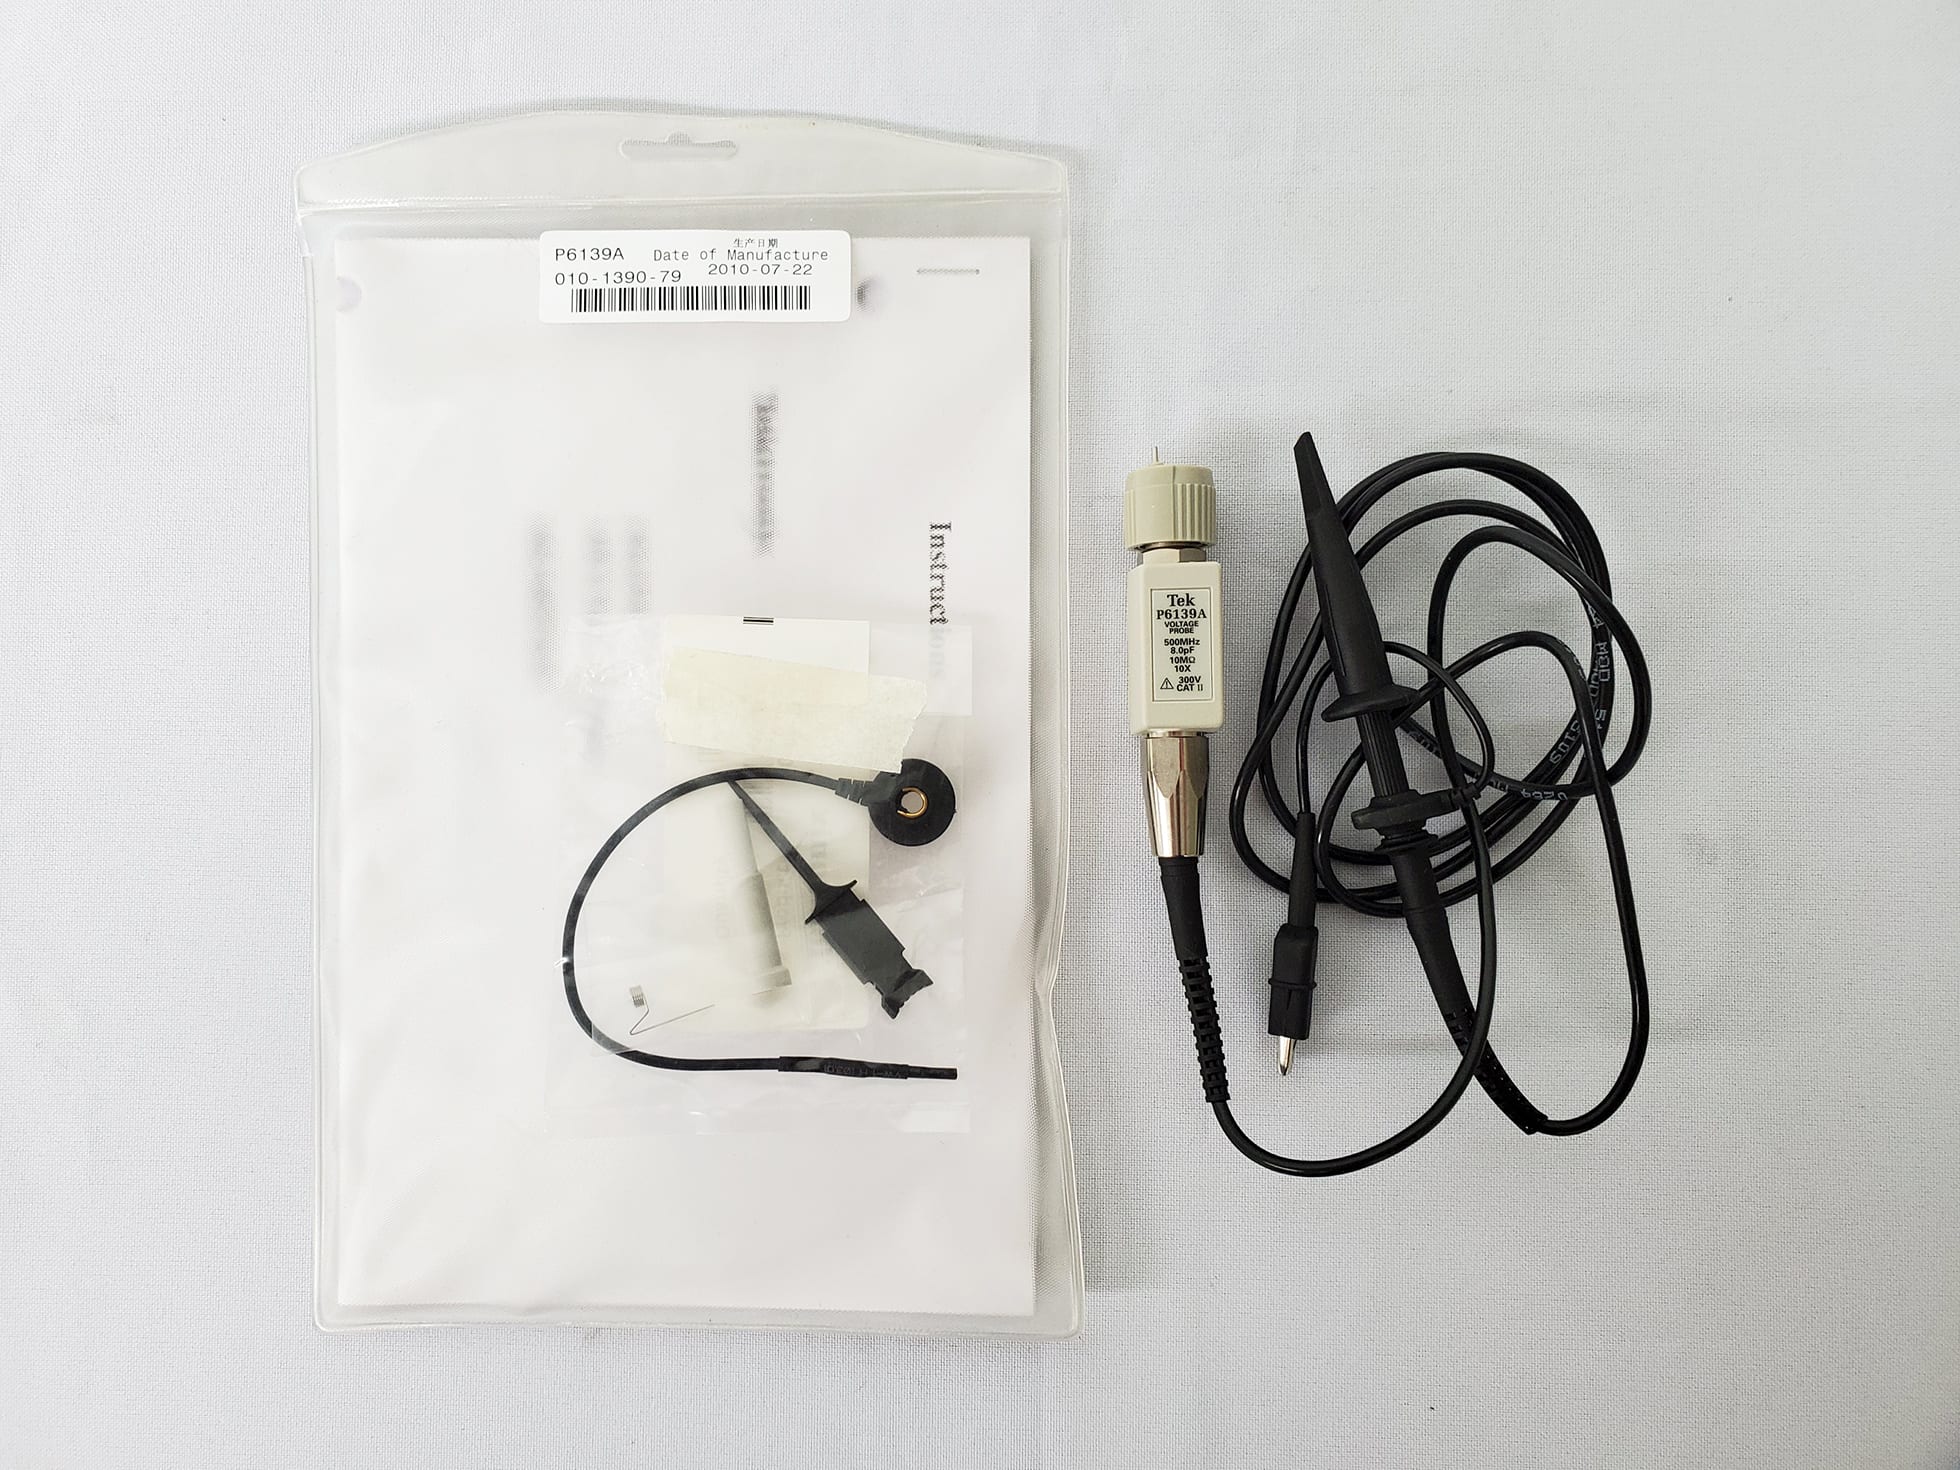 Tektronix-P 6139 A-Passive Probe for Oscilloscope-58232 For Sale